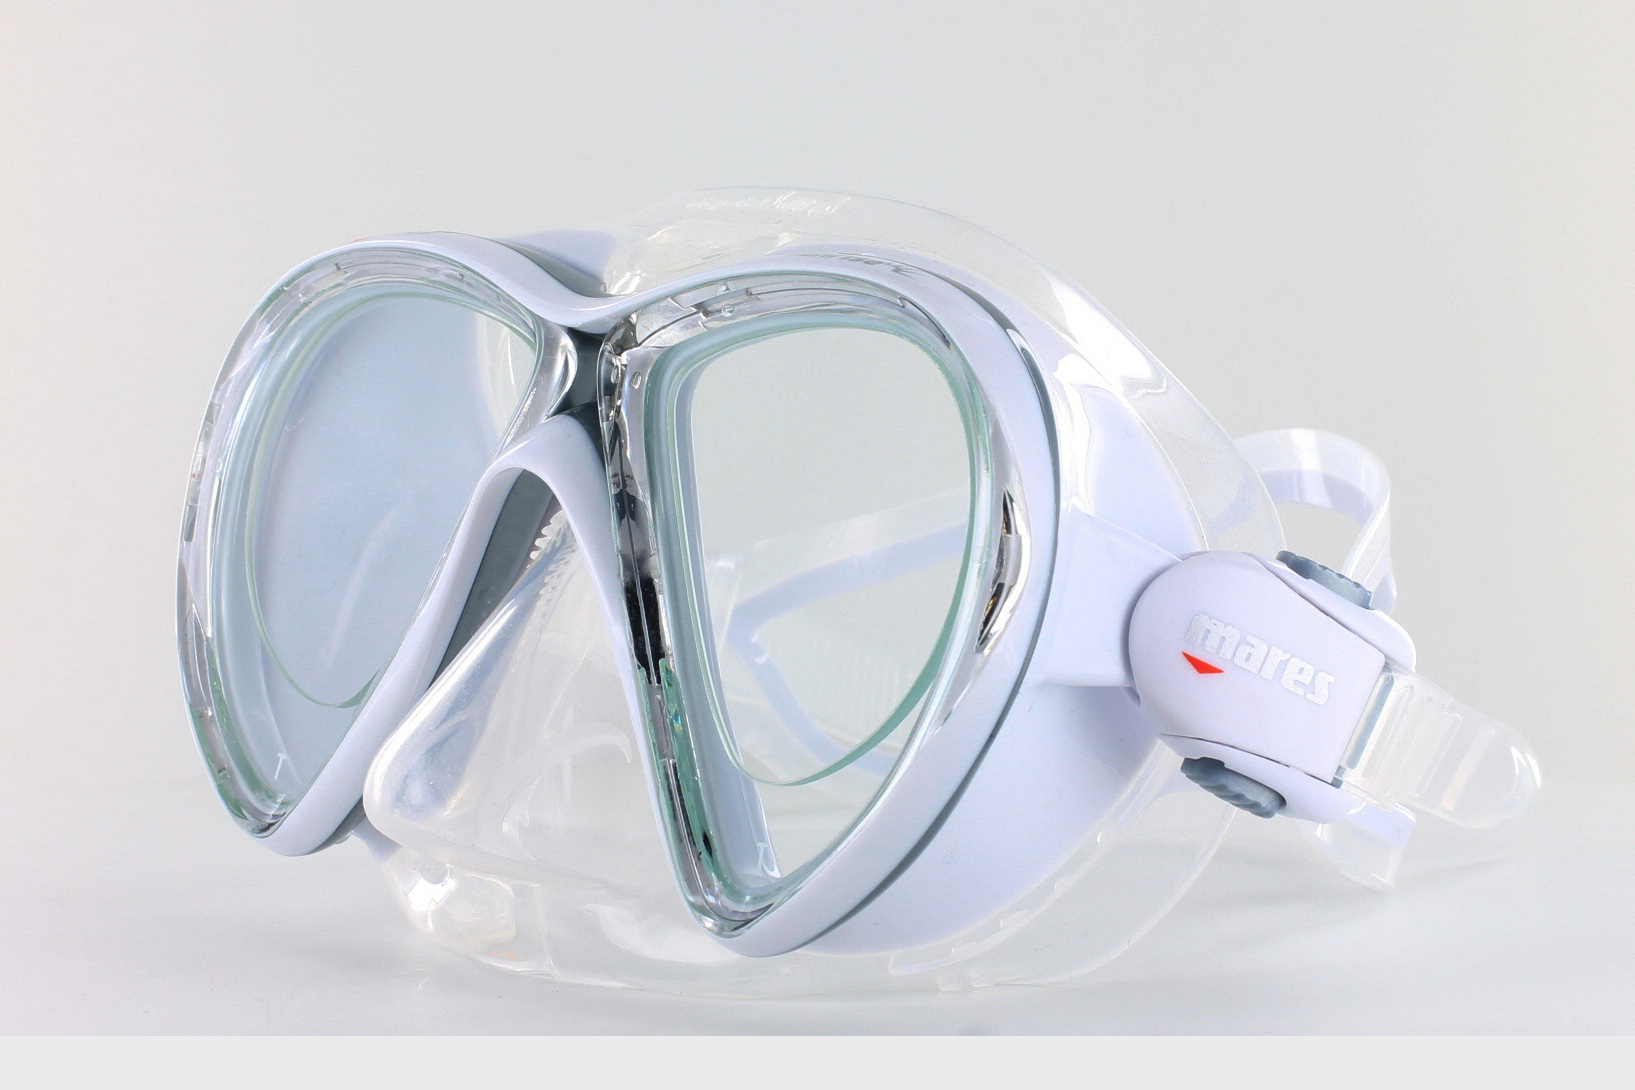 Brillenwert möglich Profi Taucherbrille Tauchermaske auch optische Sehstärke 